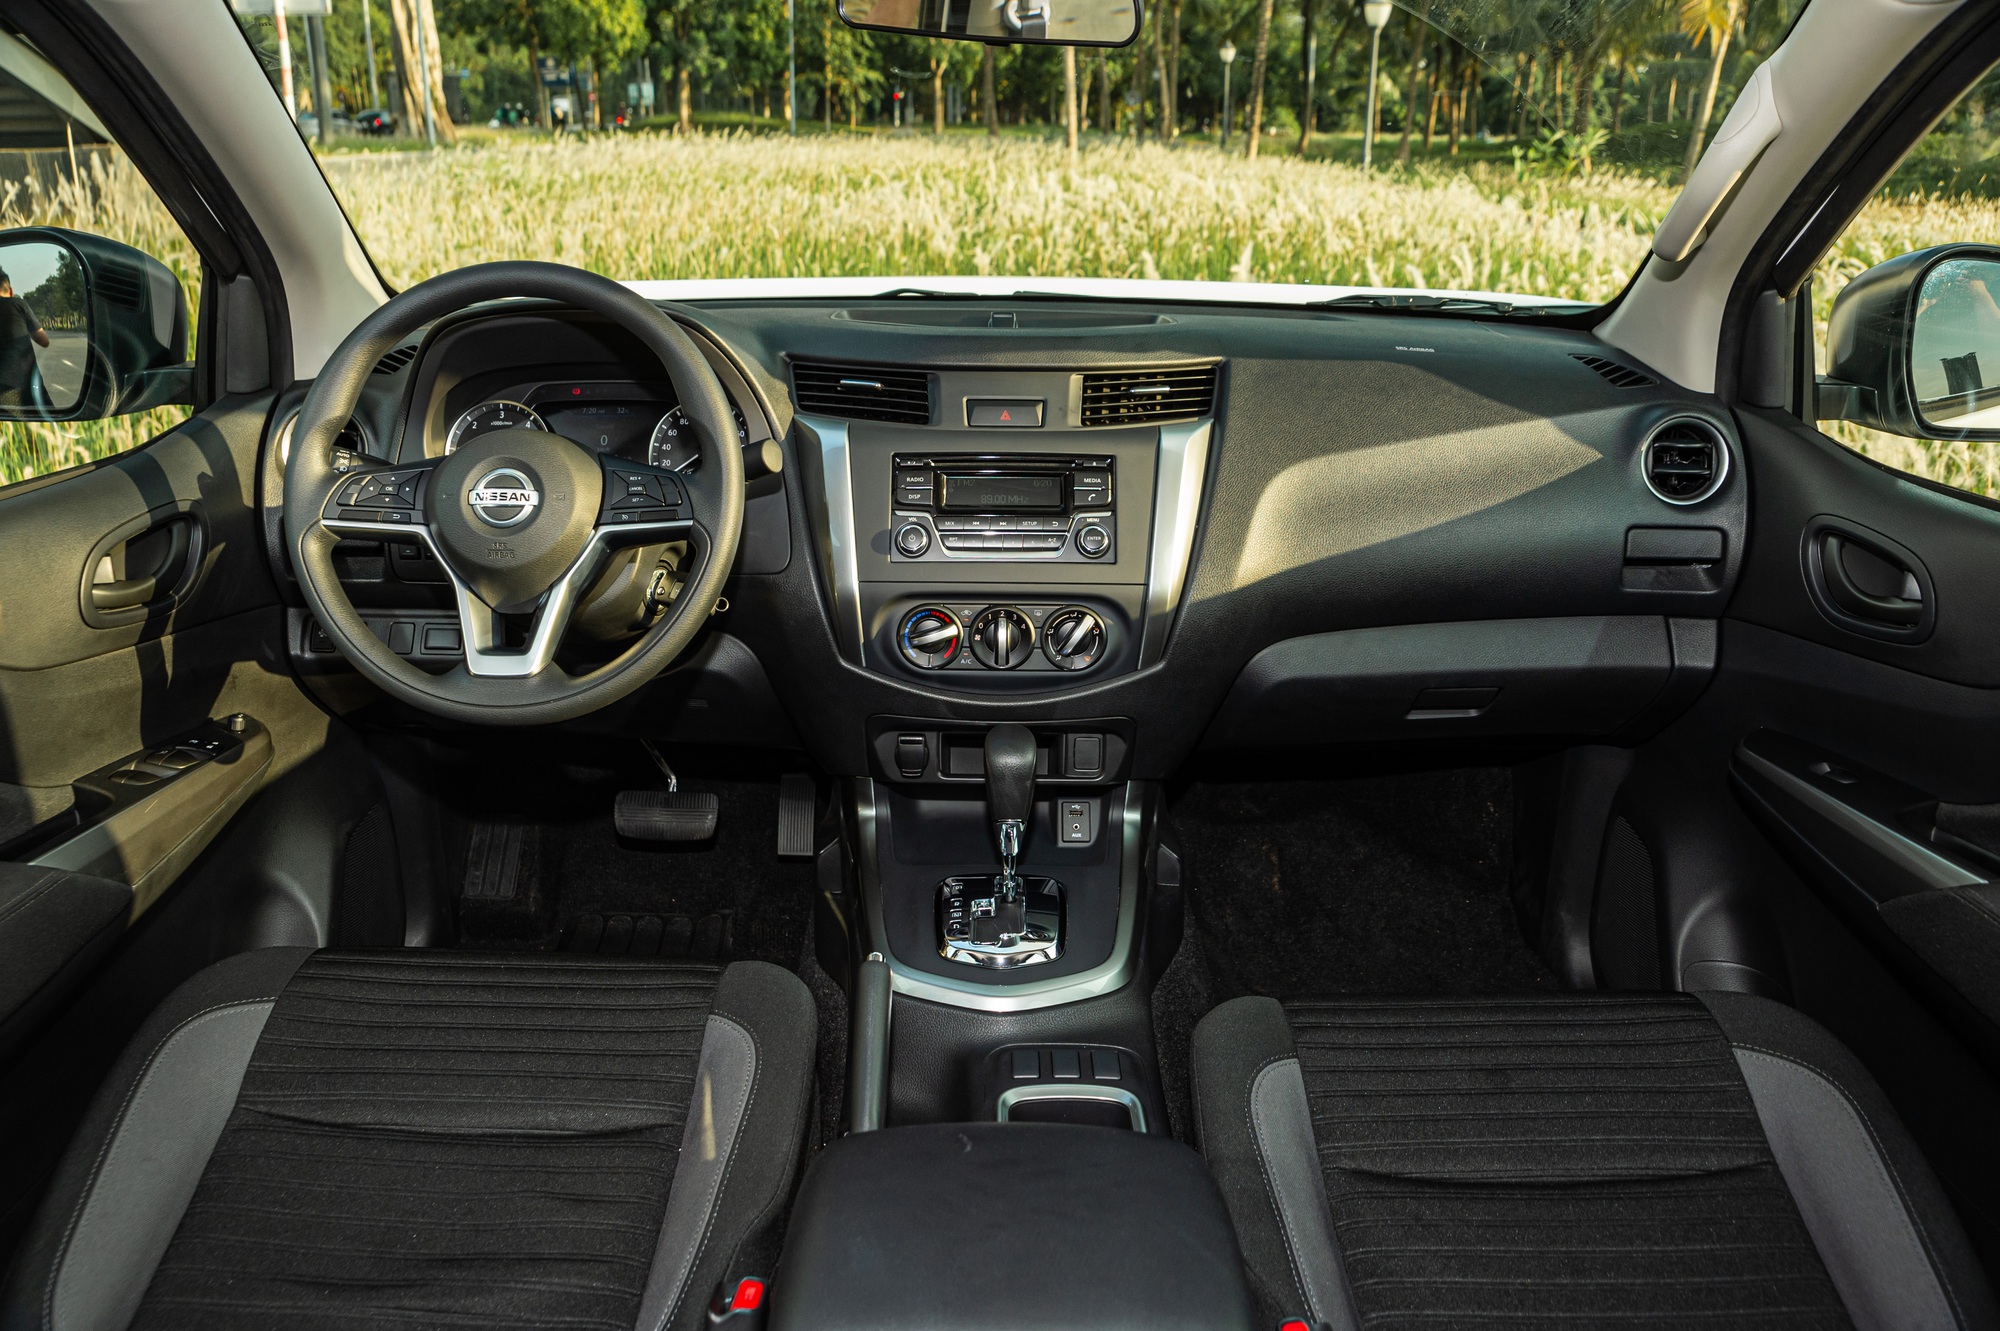 Ra mắt Nissan Navara bản 'giá rẻ' tại Việt Nam: Giá 699 triệu đồng, thêm lựa chọn cho người thực dụng - Ảnh 6.